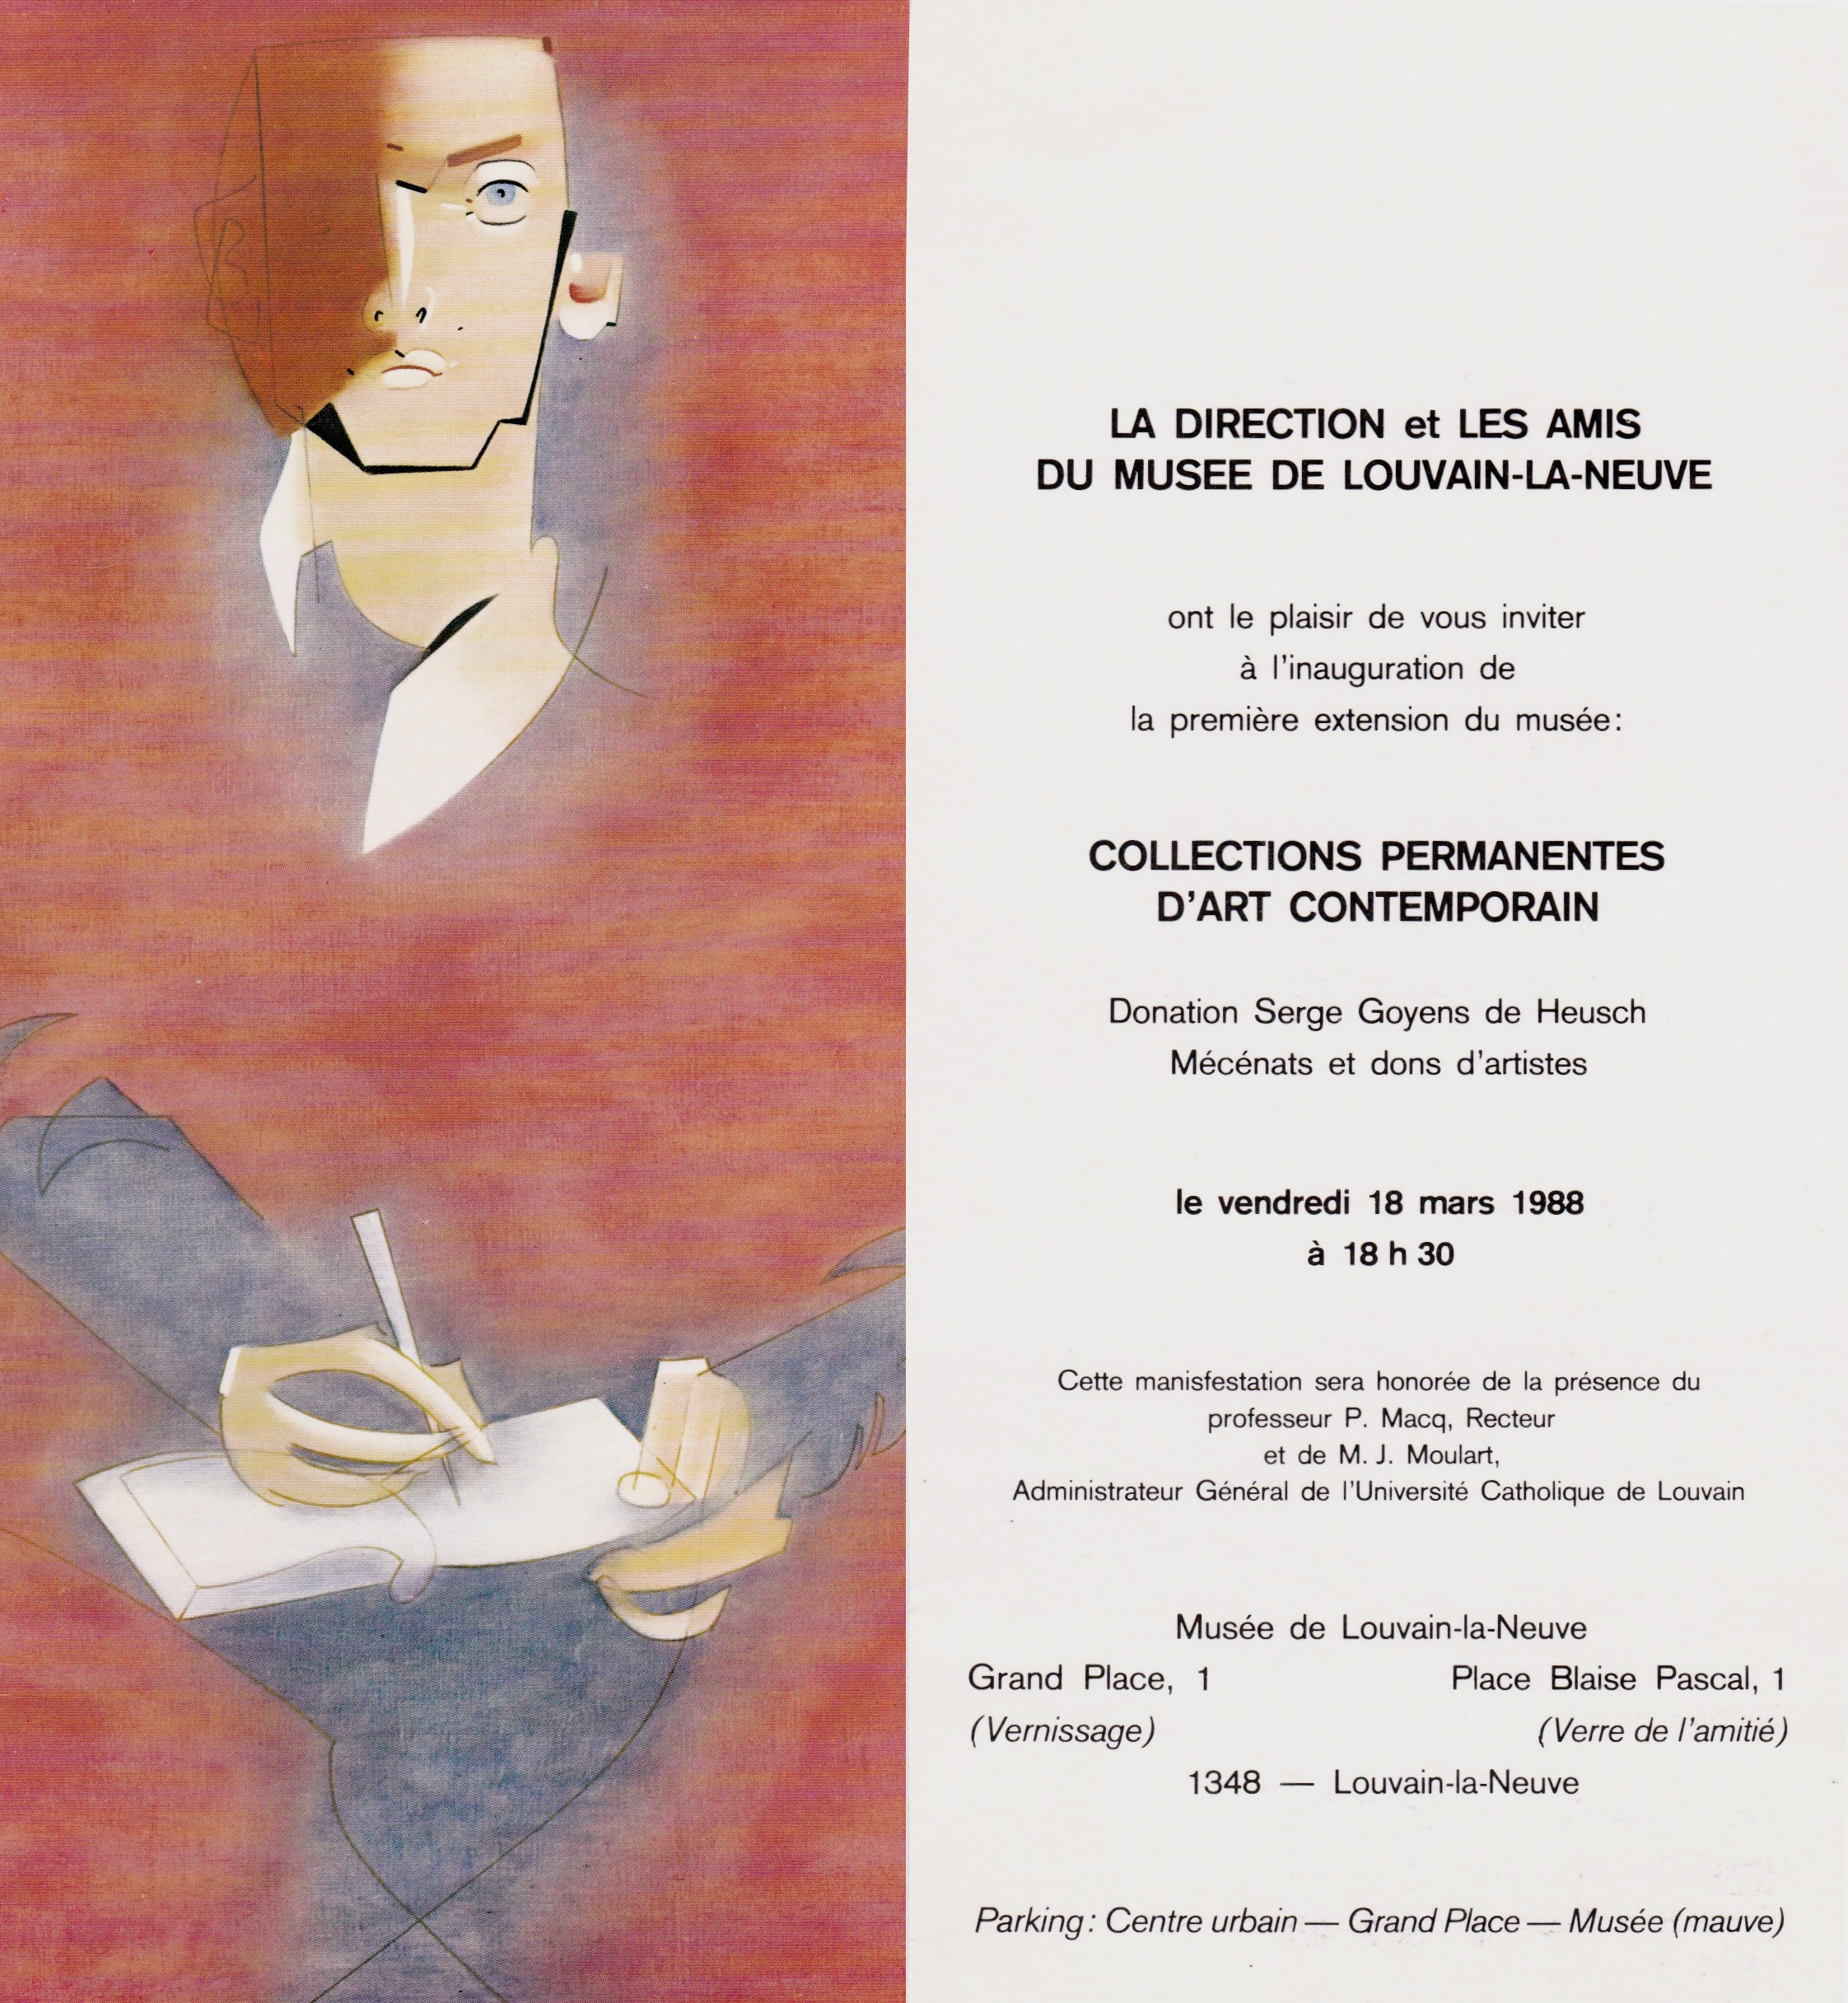 Collections permanentes d'Art Contemporain, donation Serge Goyens de Heusch, louvain-la-neuve, musée L, 1988